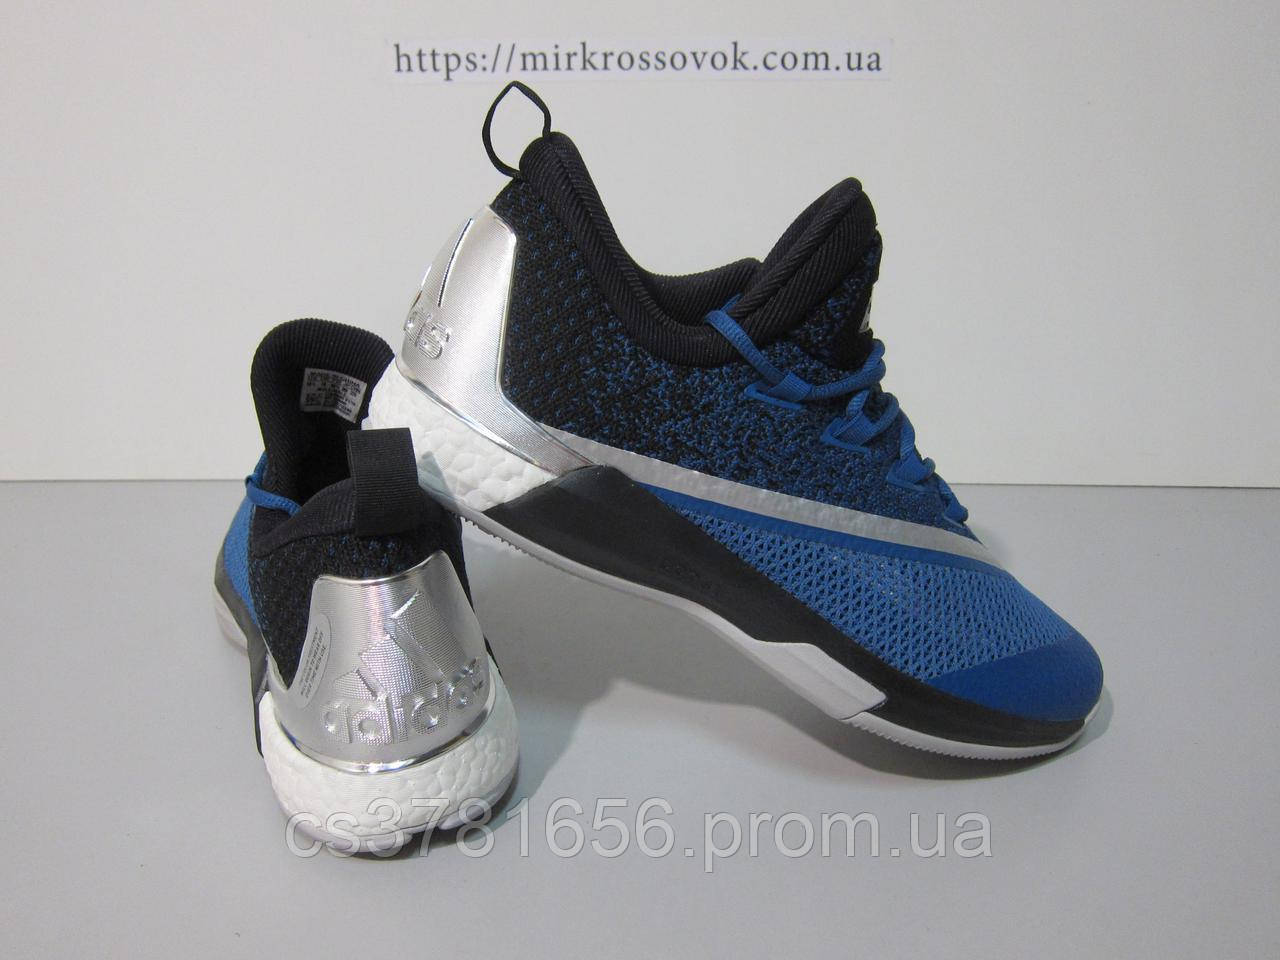 Баскетбольные кроссовки Adidas Crazy Light Boost 2.5 Low (AQ8469)  (оригинал) (ID#1759943671), цена: 1790 ₴, купить на Prom.ua